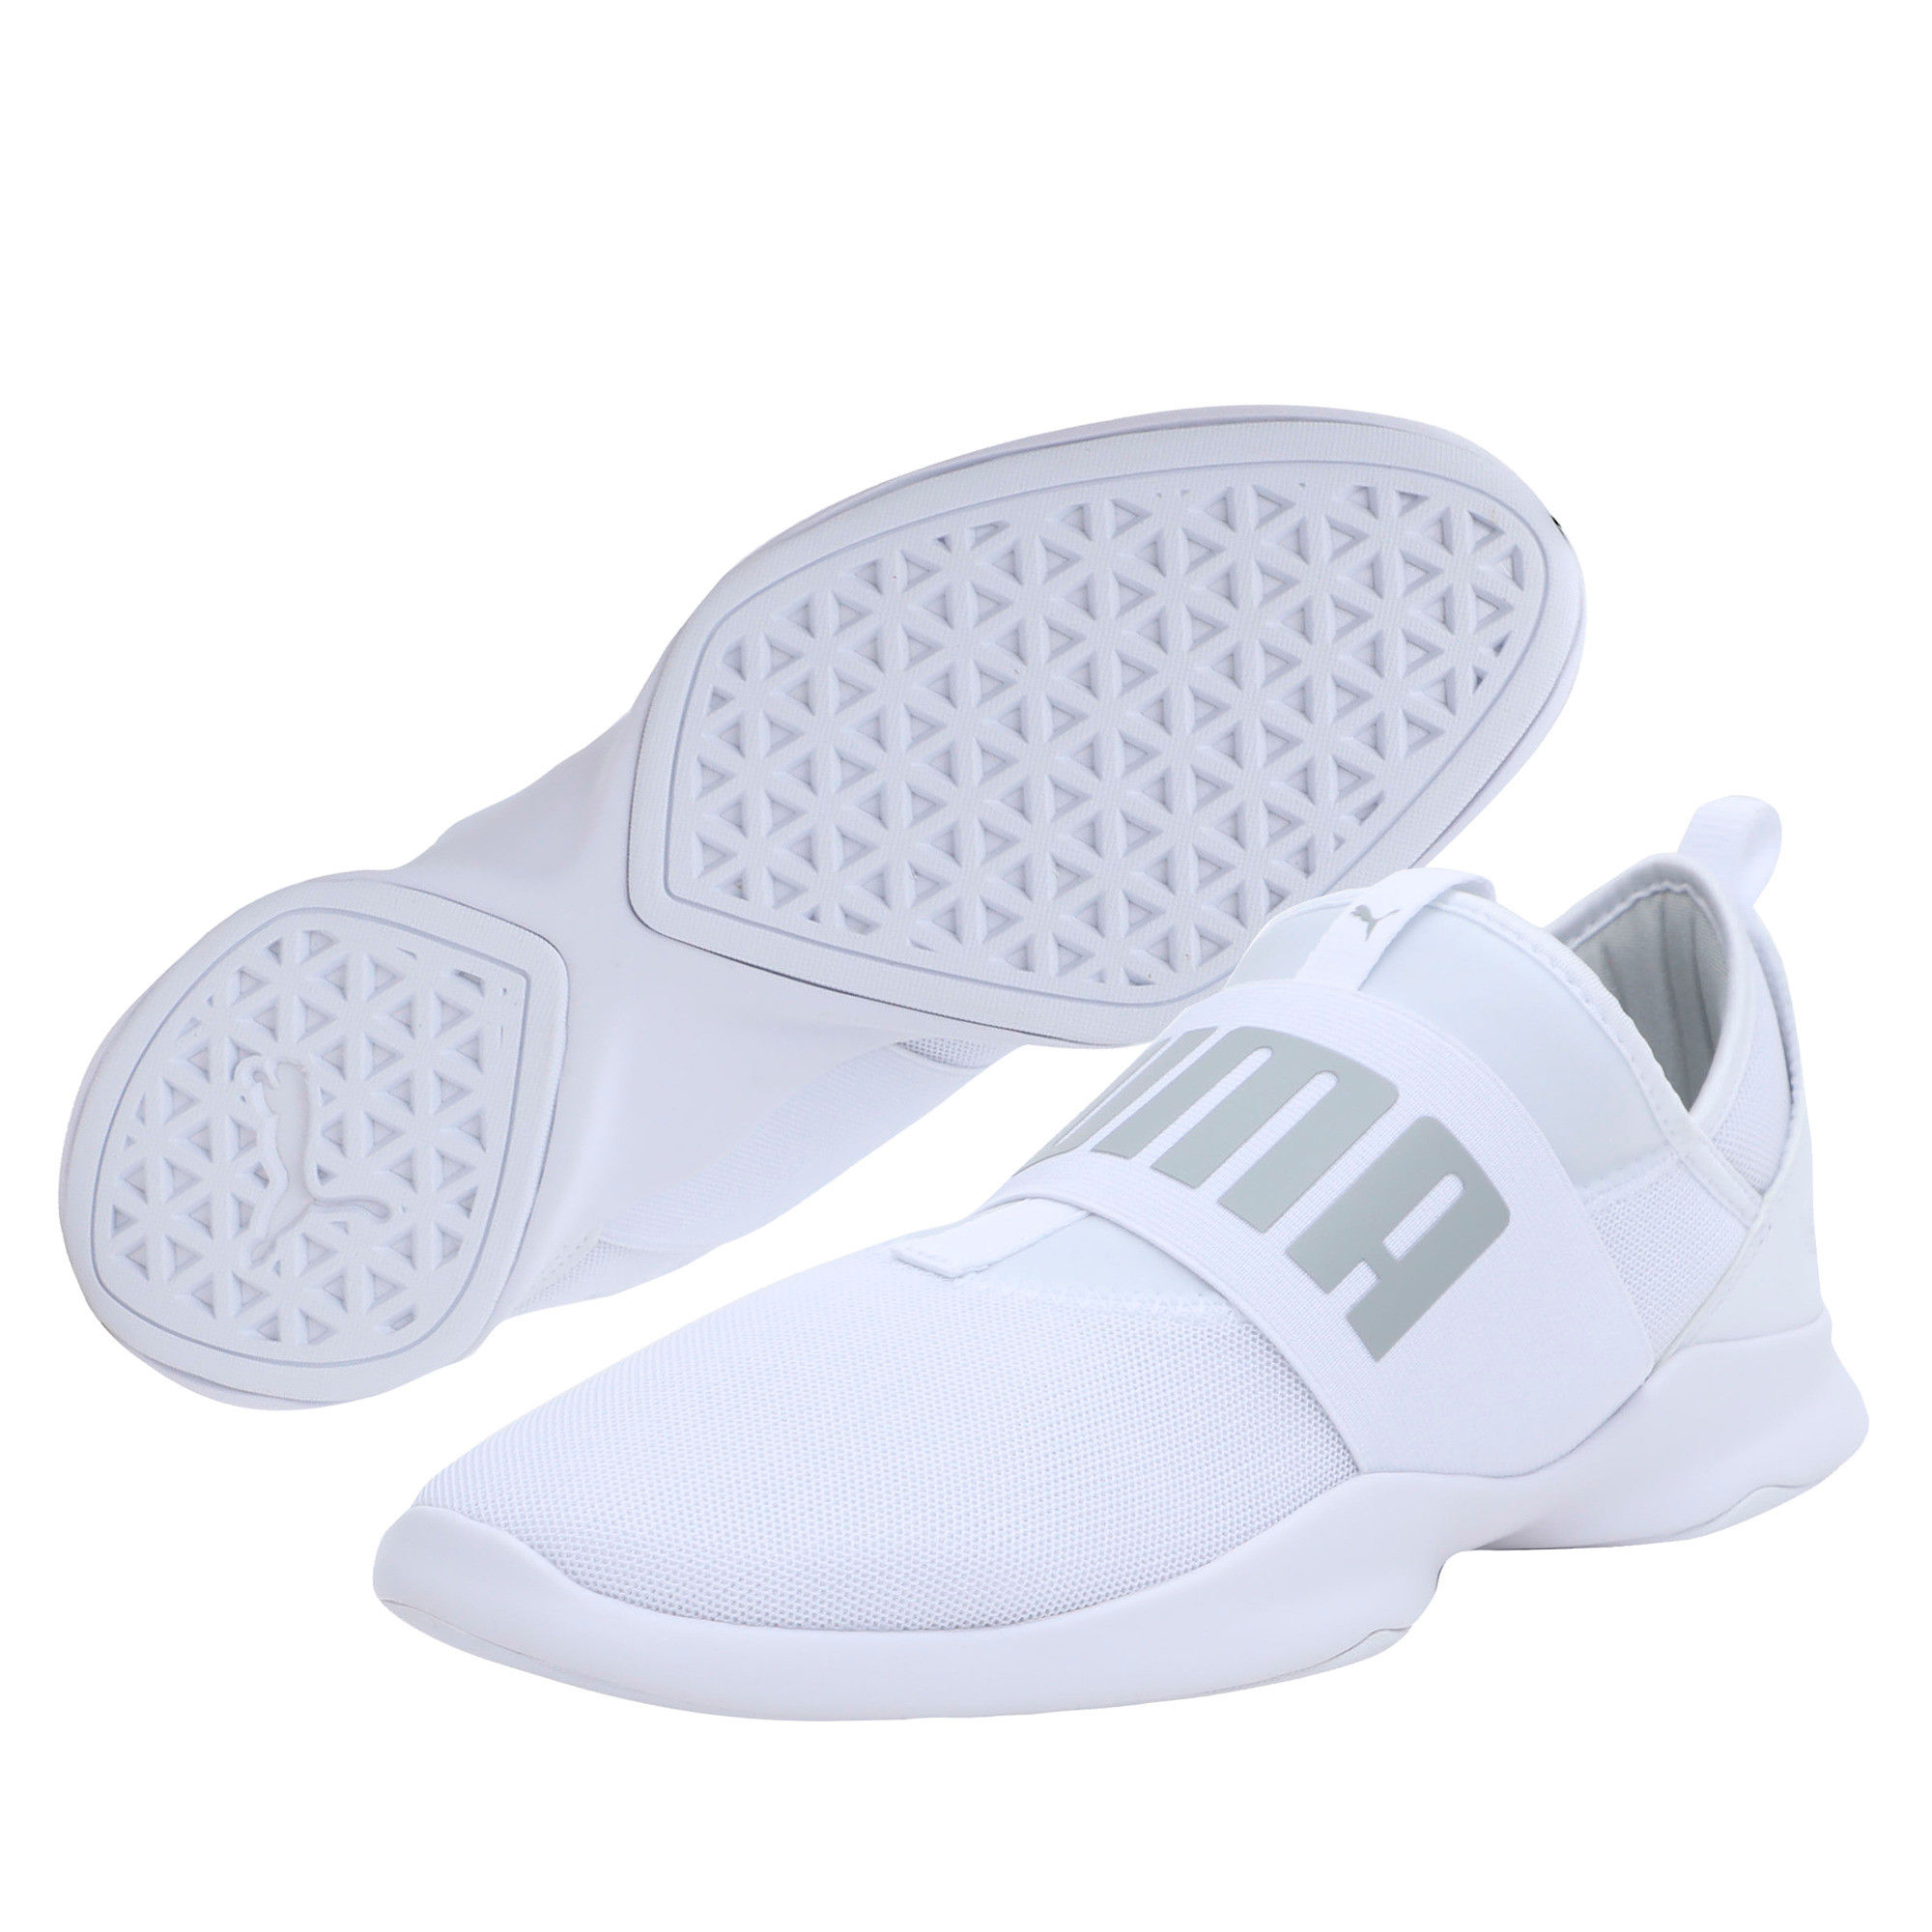 puma dare sneakers white